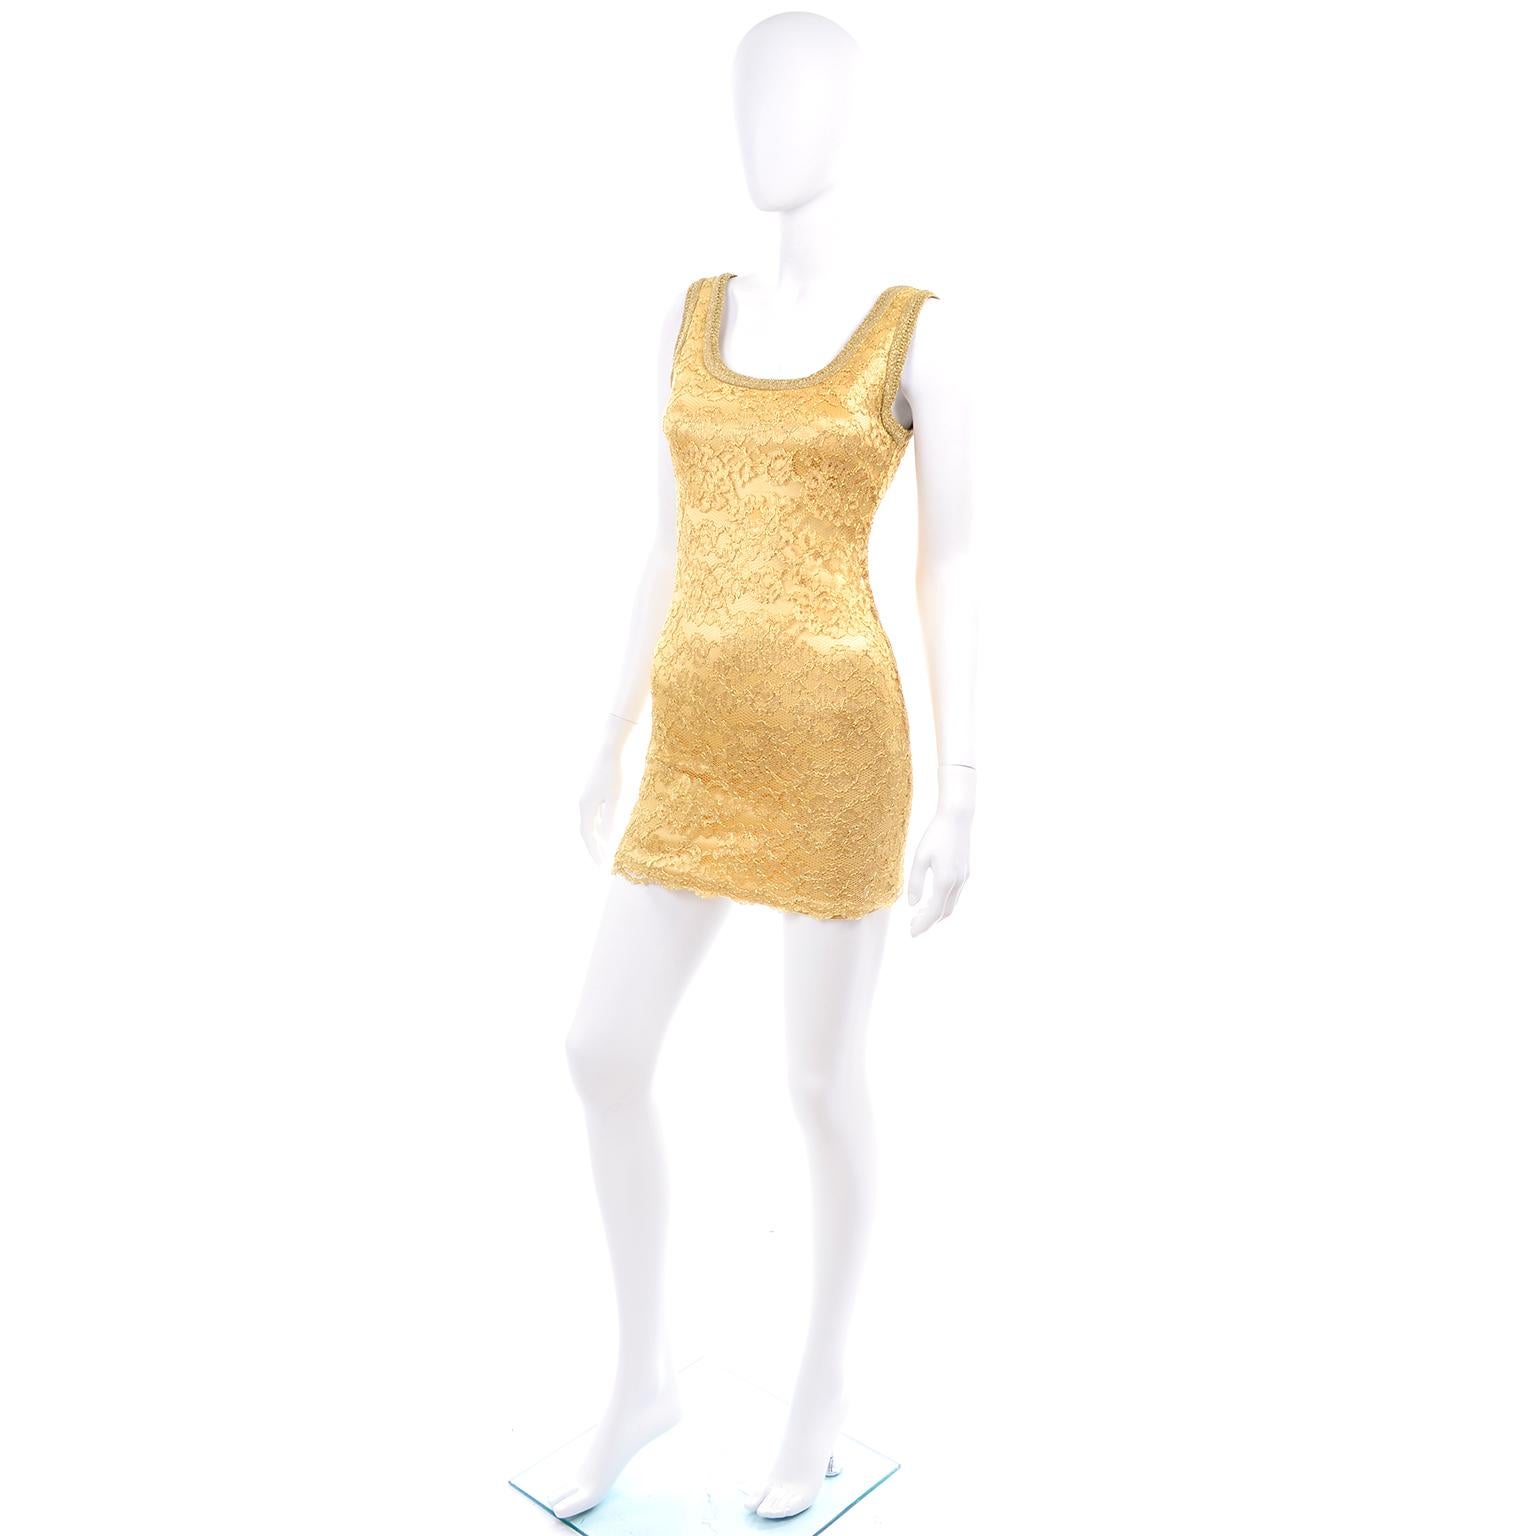 Dies ist ein umwerfendes Vintage-Mini-Kleid aus goldfarbener Stretch-Spitze von Bergdorf Goodman mit dem Label Gruppo GFT.  Sie können es als Mini tragen oder mit einer Leggings kombinieren! Dieses Designerkleid wurde in den USA hergestellt und ist